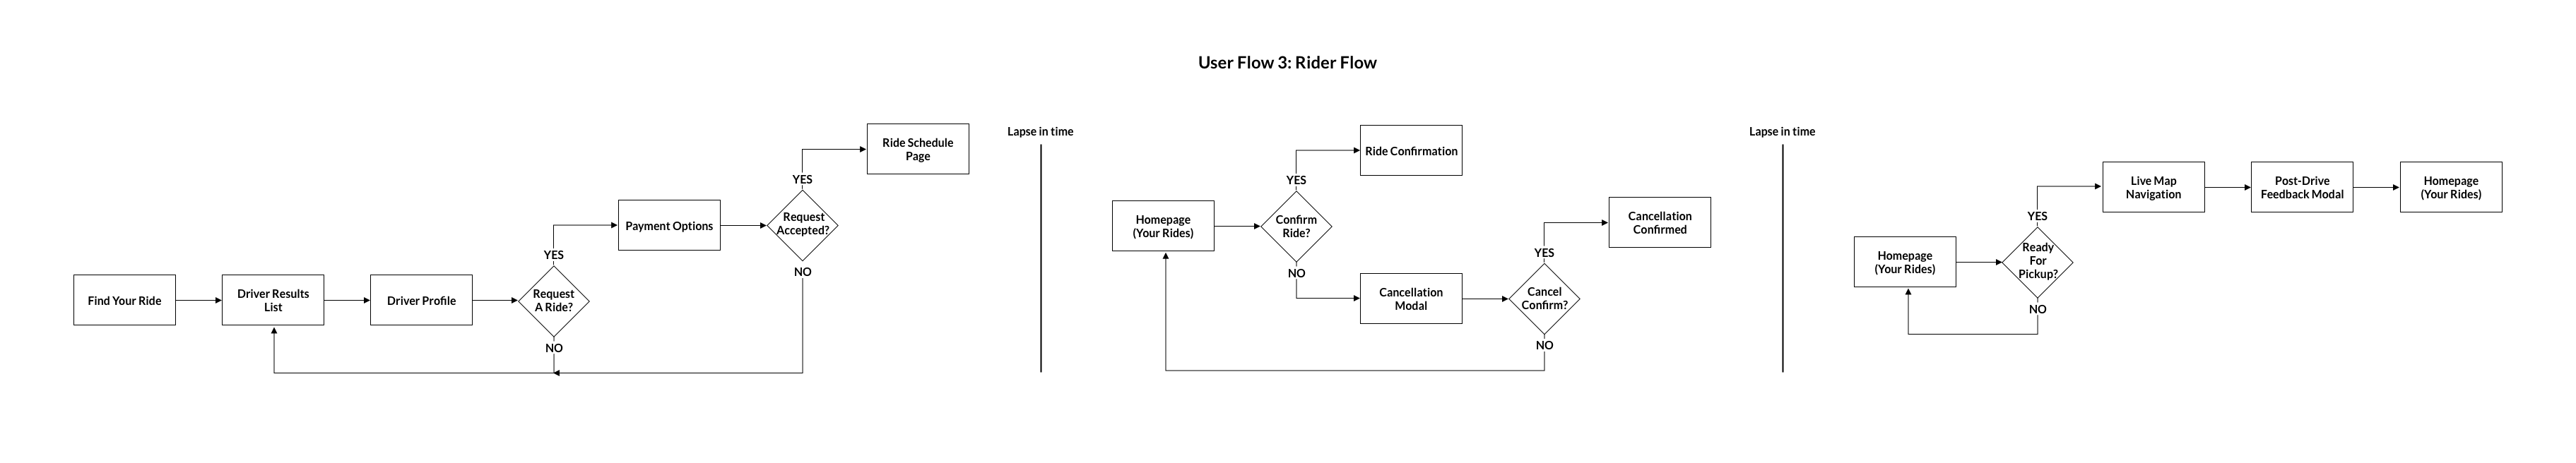 User-Flow-3_Rider-Flow